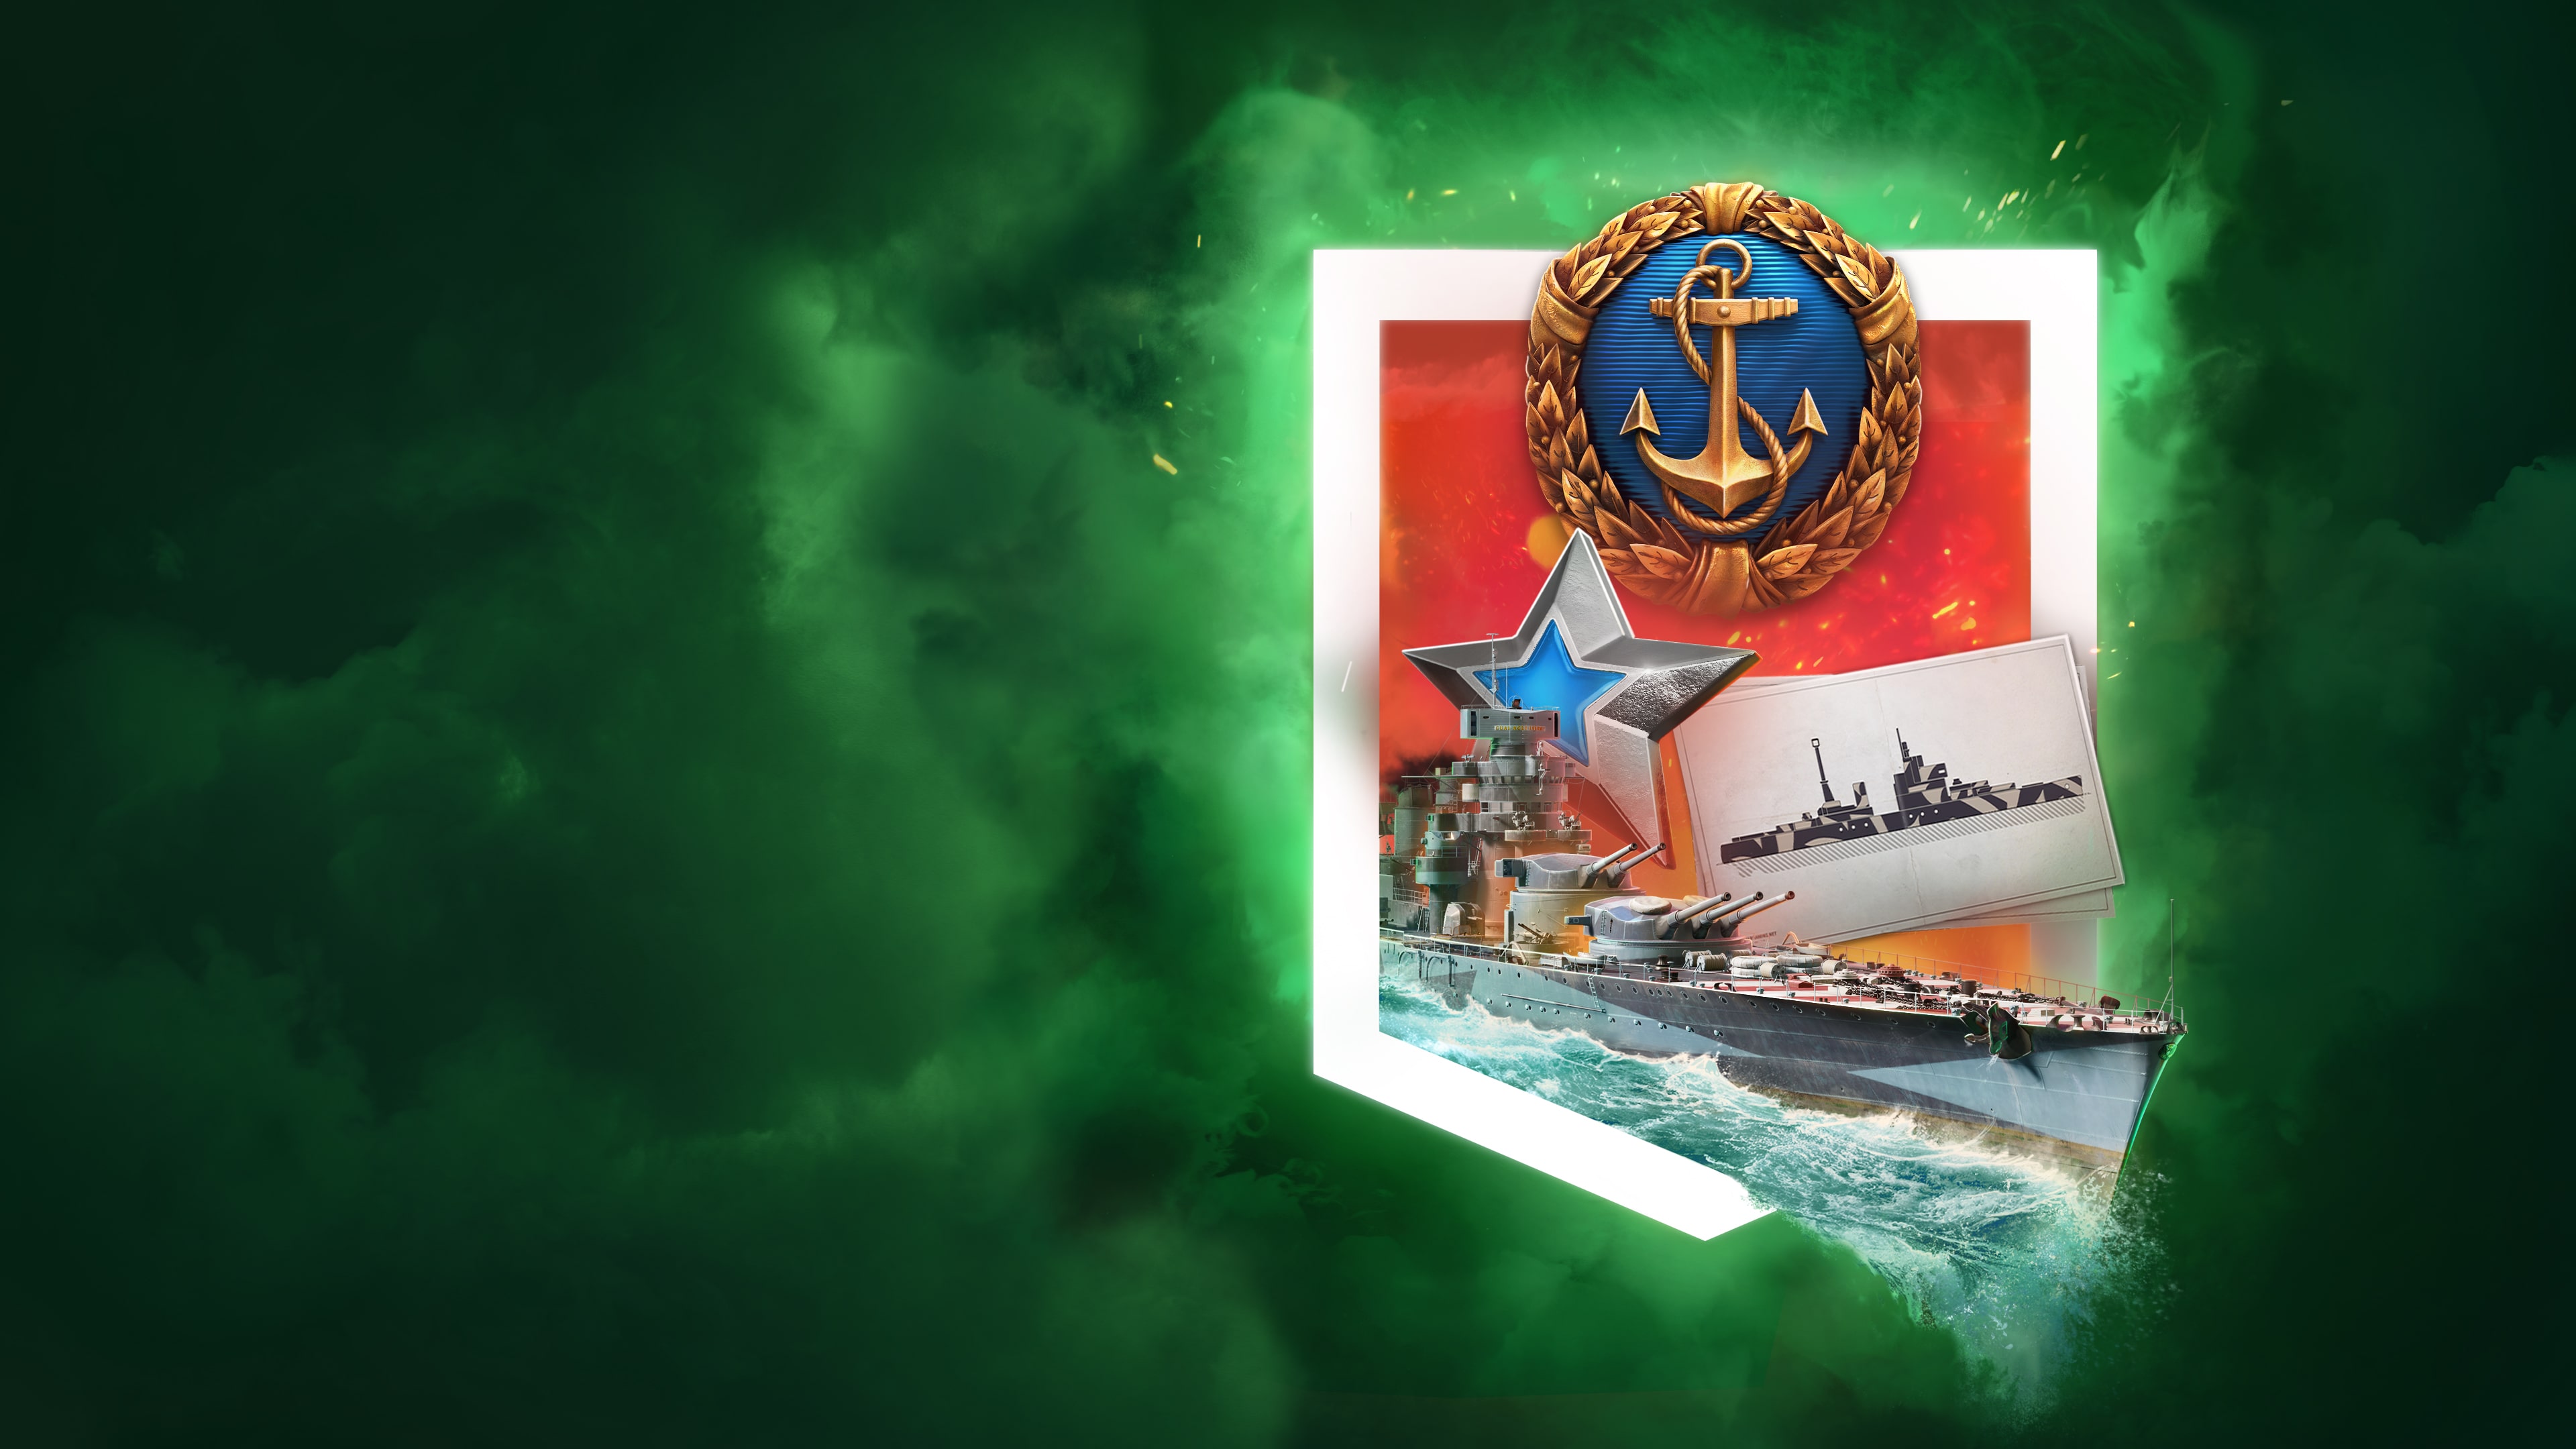 World of Warships: Legends — PS4™ القيصر العظيم